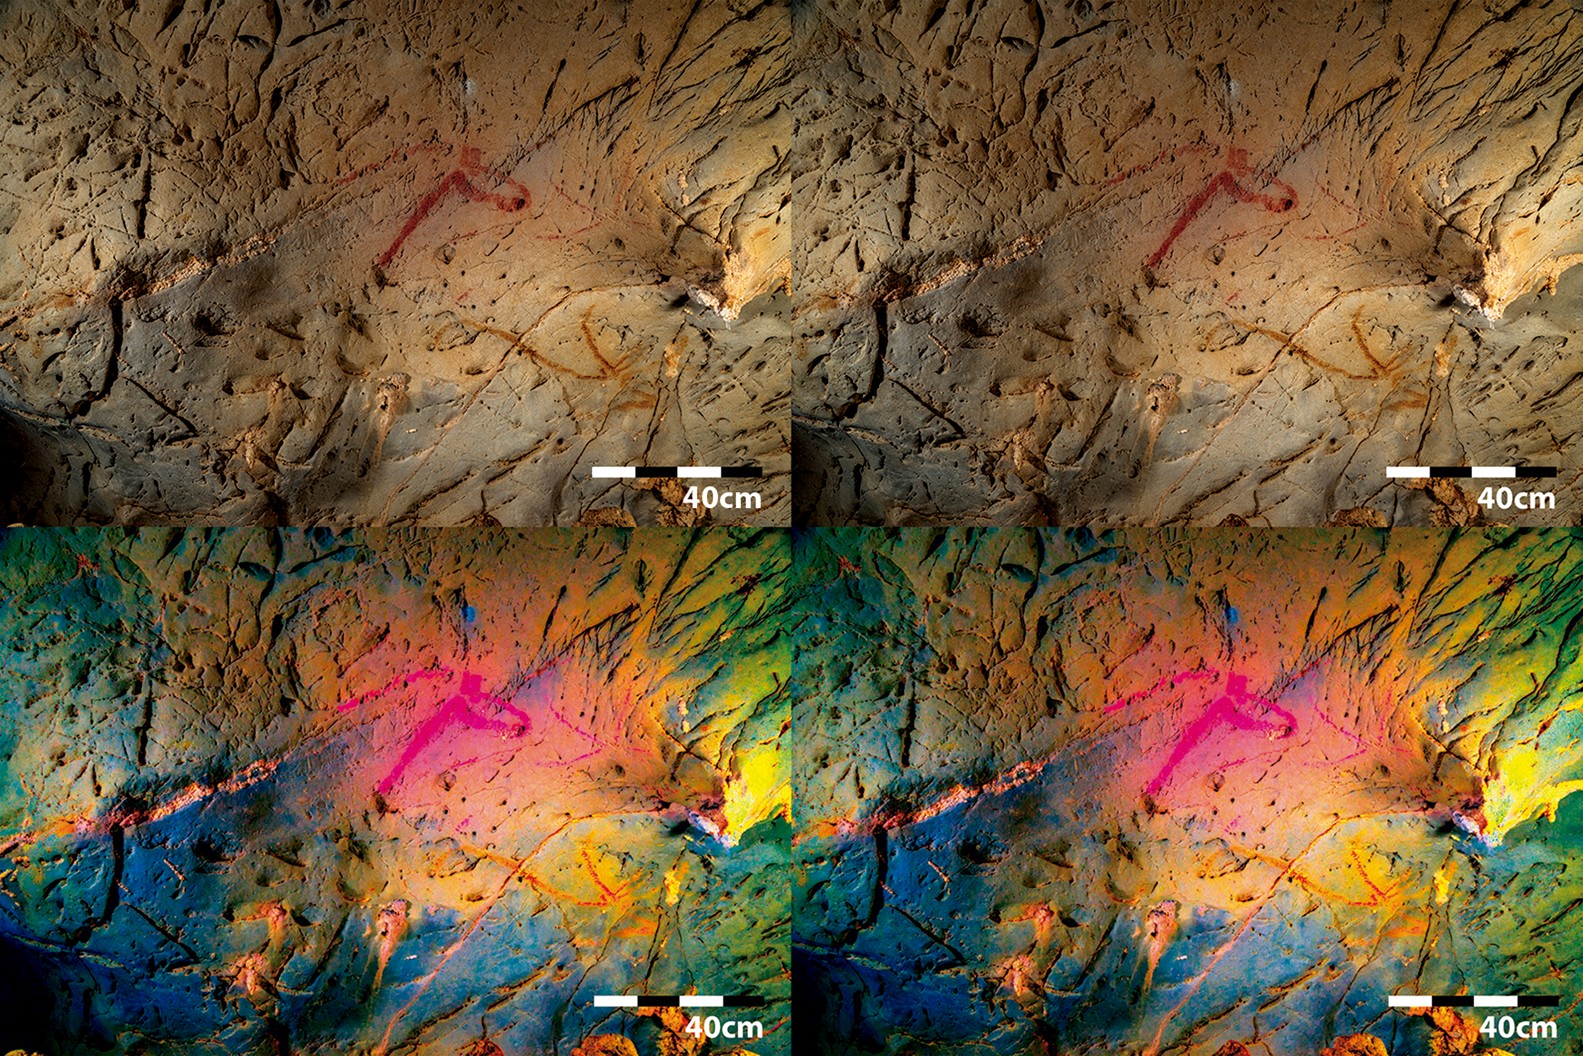 Estudo revelou animais escondidos em arte rupestre de caverna na Espanha — Foto: Asiain et al